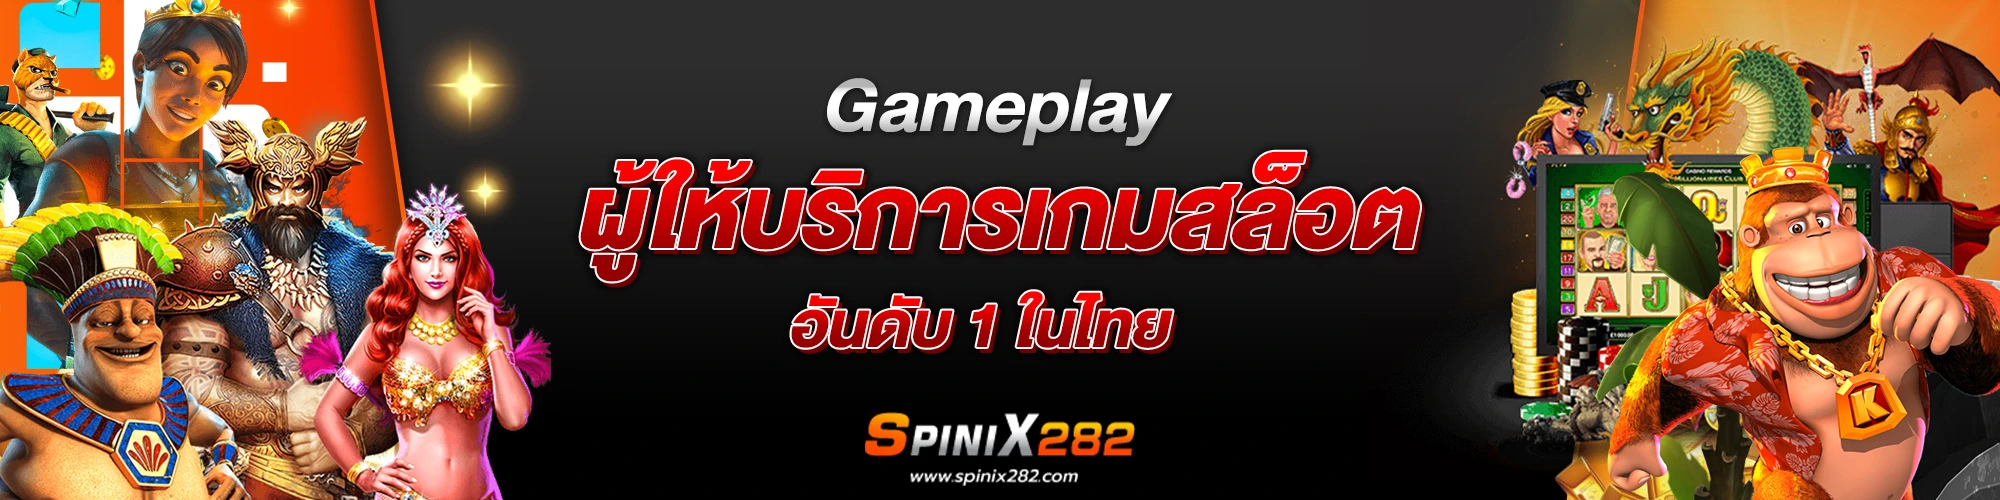 Gameplay ผู้ให้บริการเกมสล็อตอันดับ 1 ในไทย​